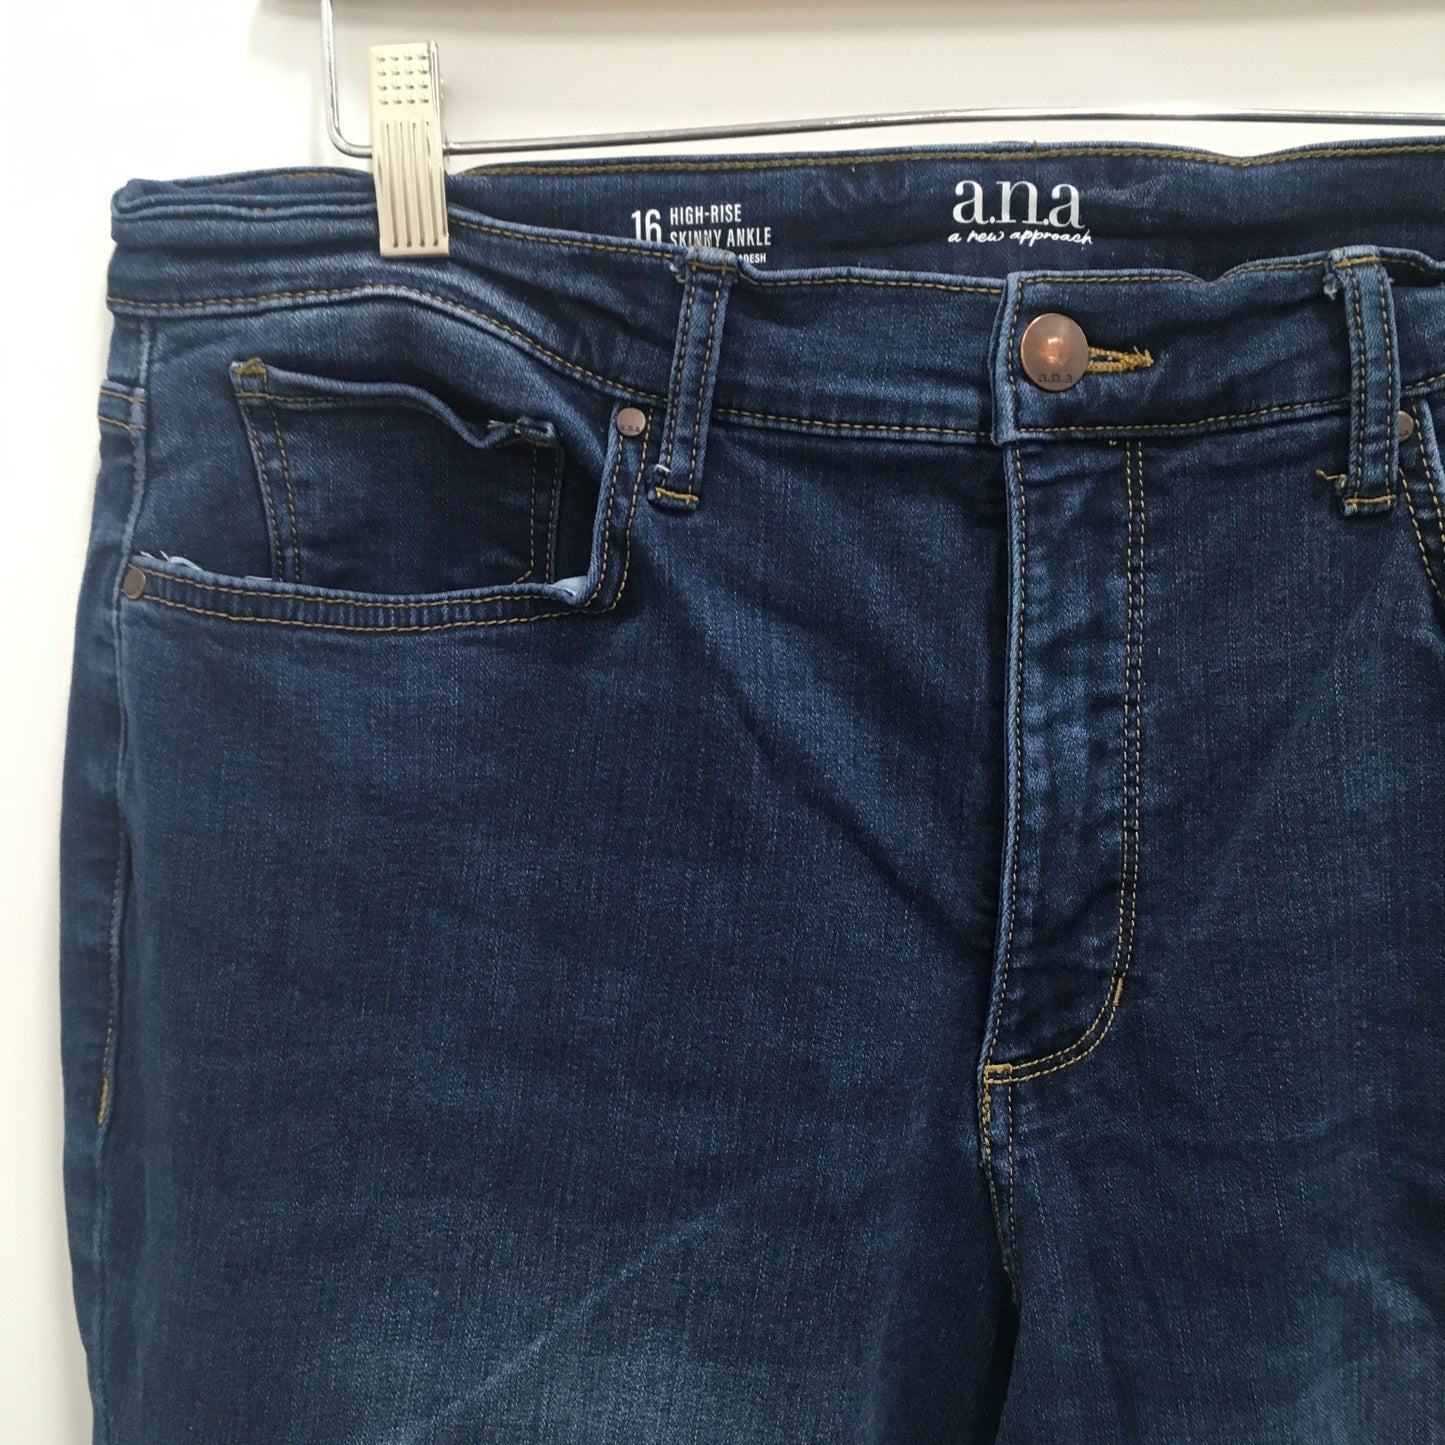 Jeans Skinny By Ana  Size: 16